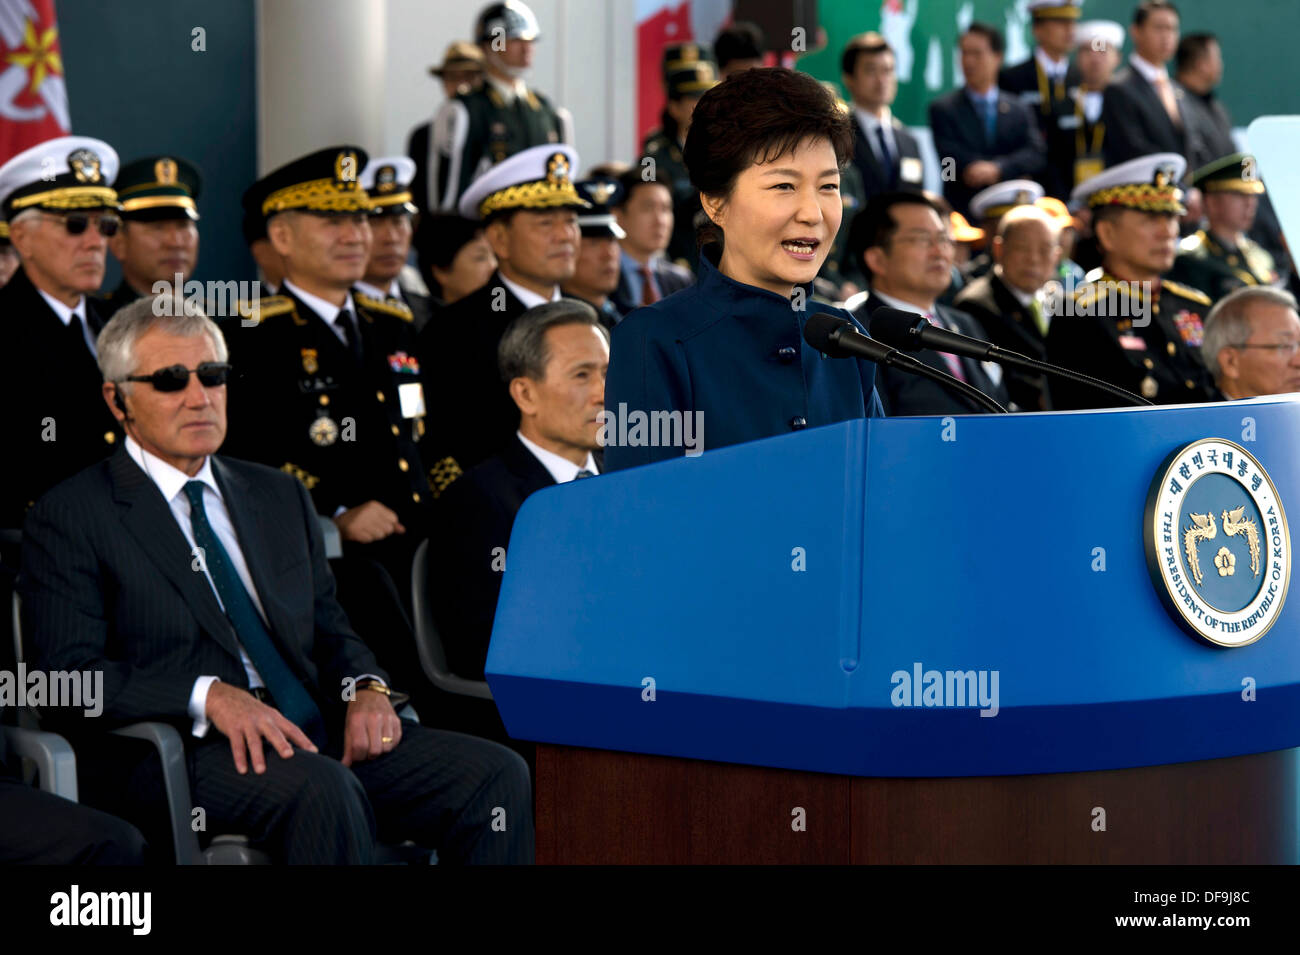 Südkoreanischen Präsidenten PARK Geun-Hye während der Jubiläums-Parade der US & ROK Allianz als US-Verteidigungsminister Chuck Hagel blickt auf 1. Oktober 2013 in Seoul, Südkorea. Stockfoto